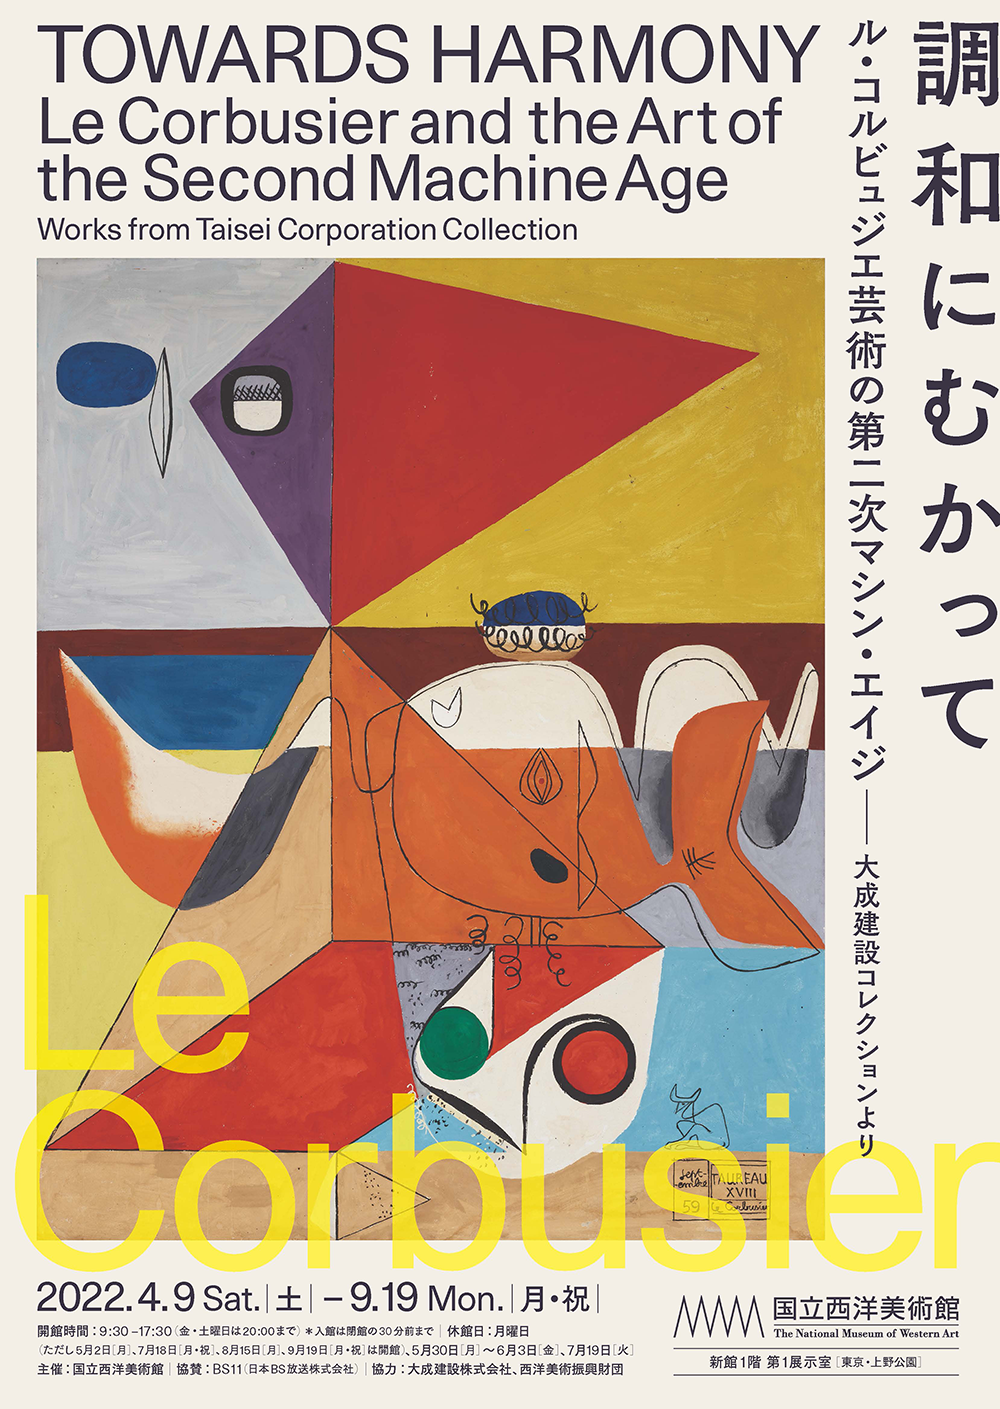 日本国立西洋美术馆的展览海报设计